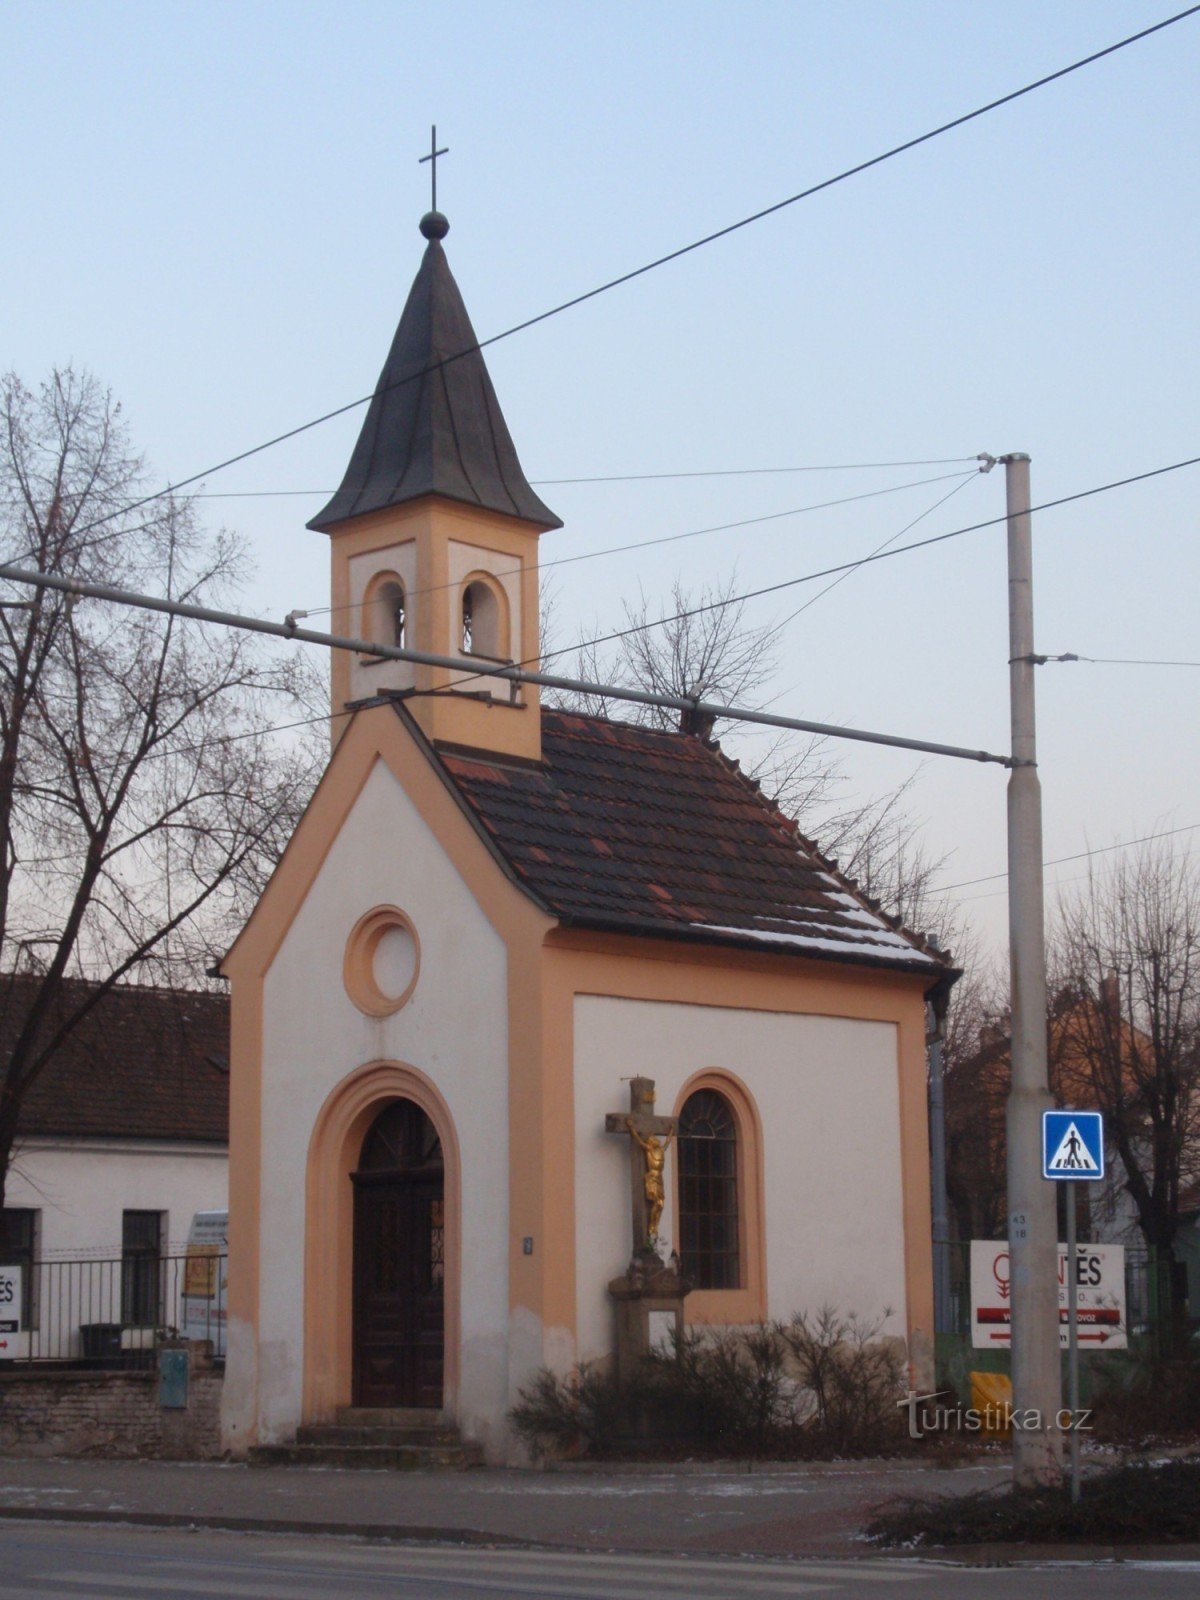 Chapel of St. Františka in Brno-Židenice